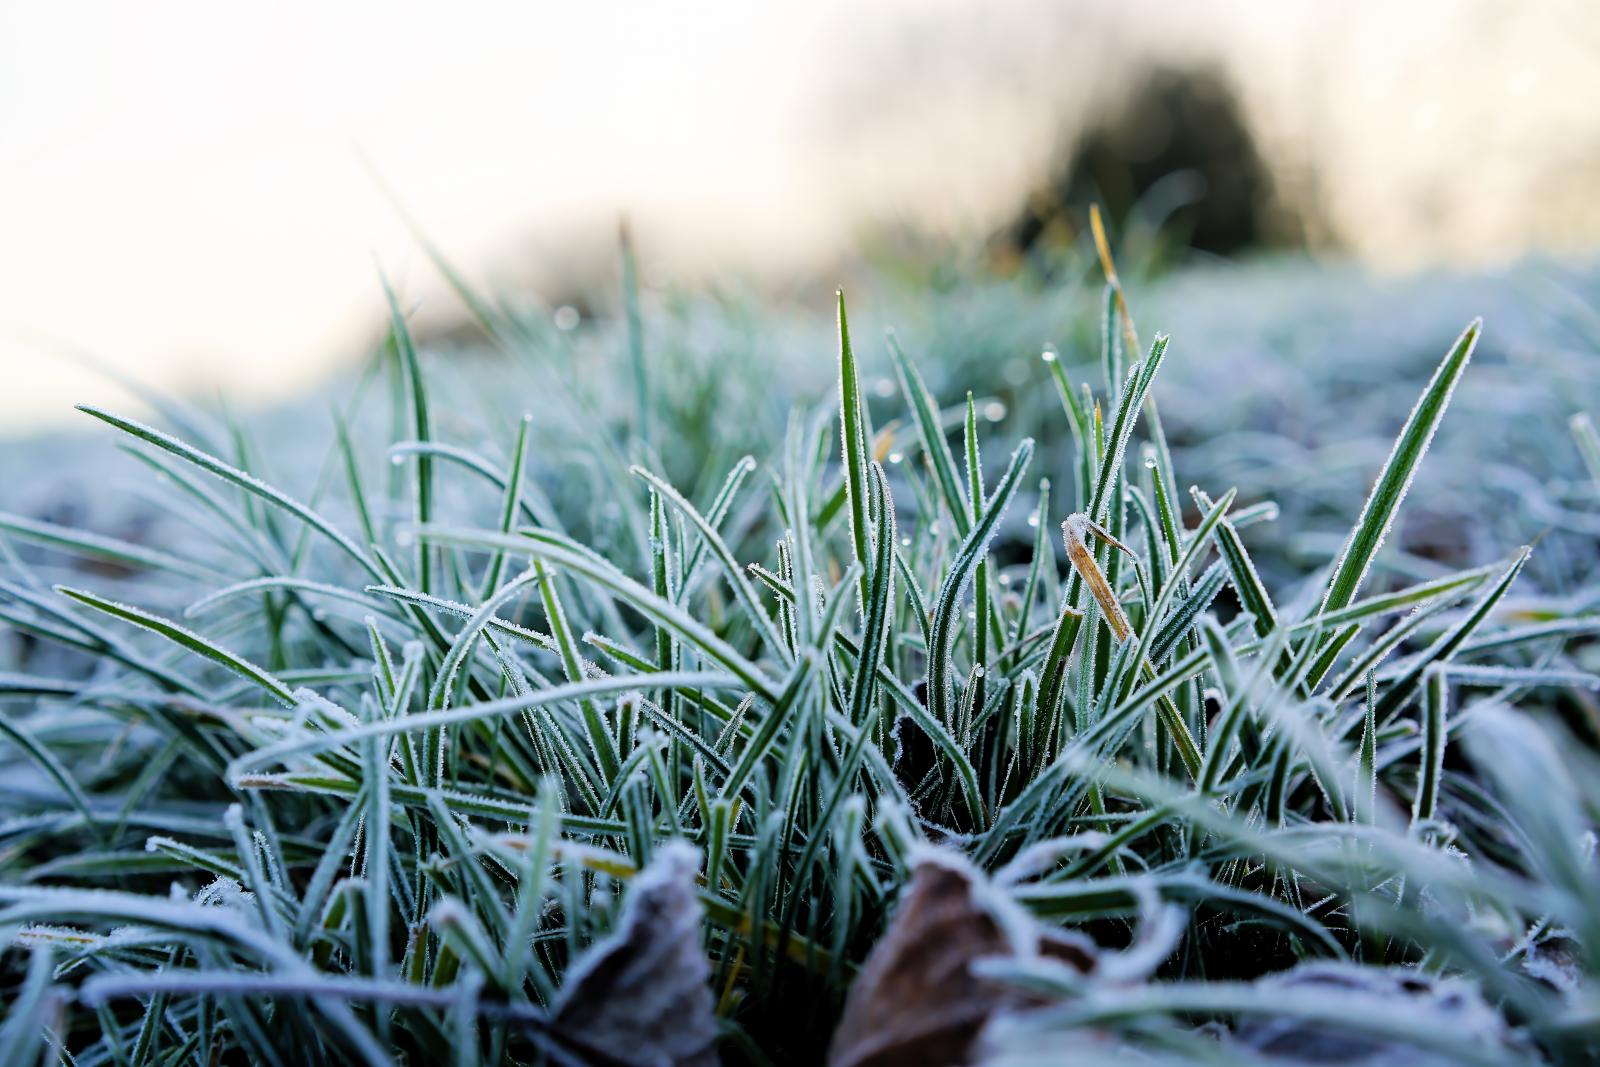 Avoid walking on frosty lawns